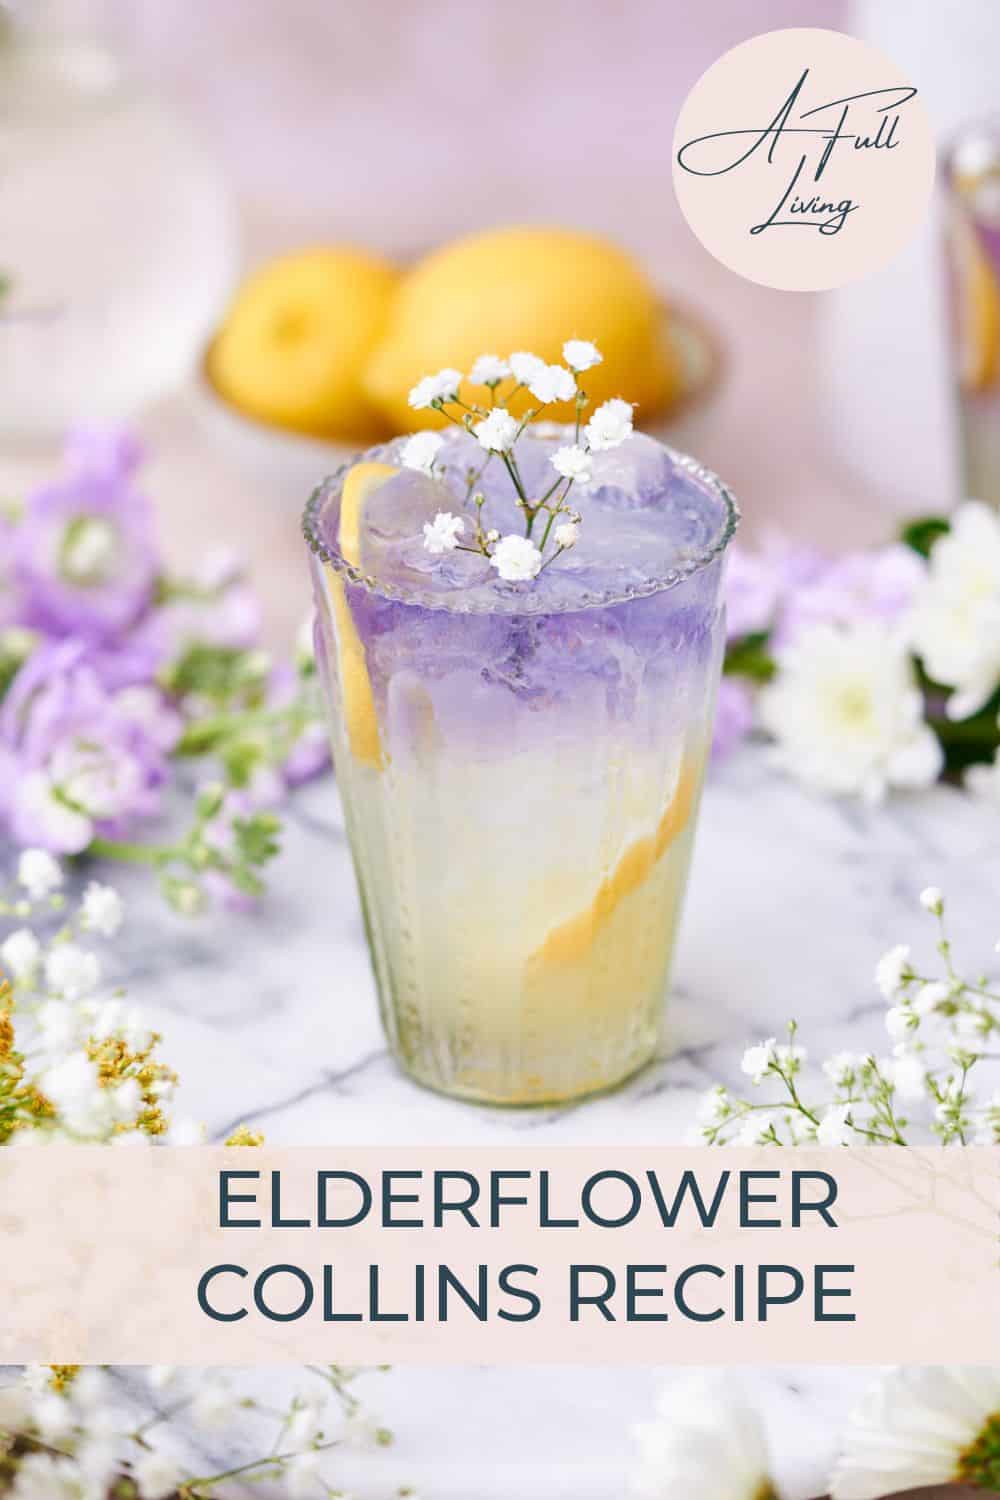 Elderflower collins recipe.